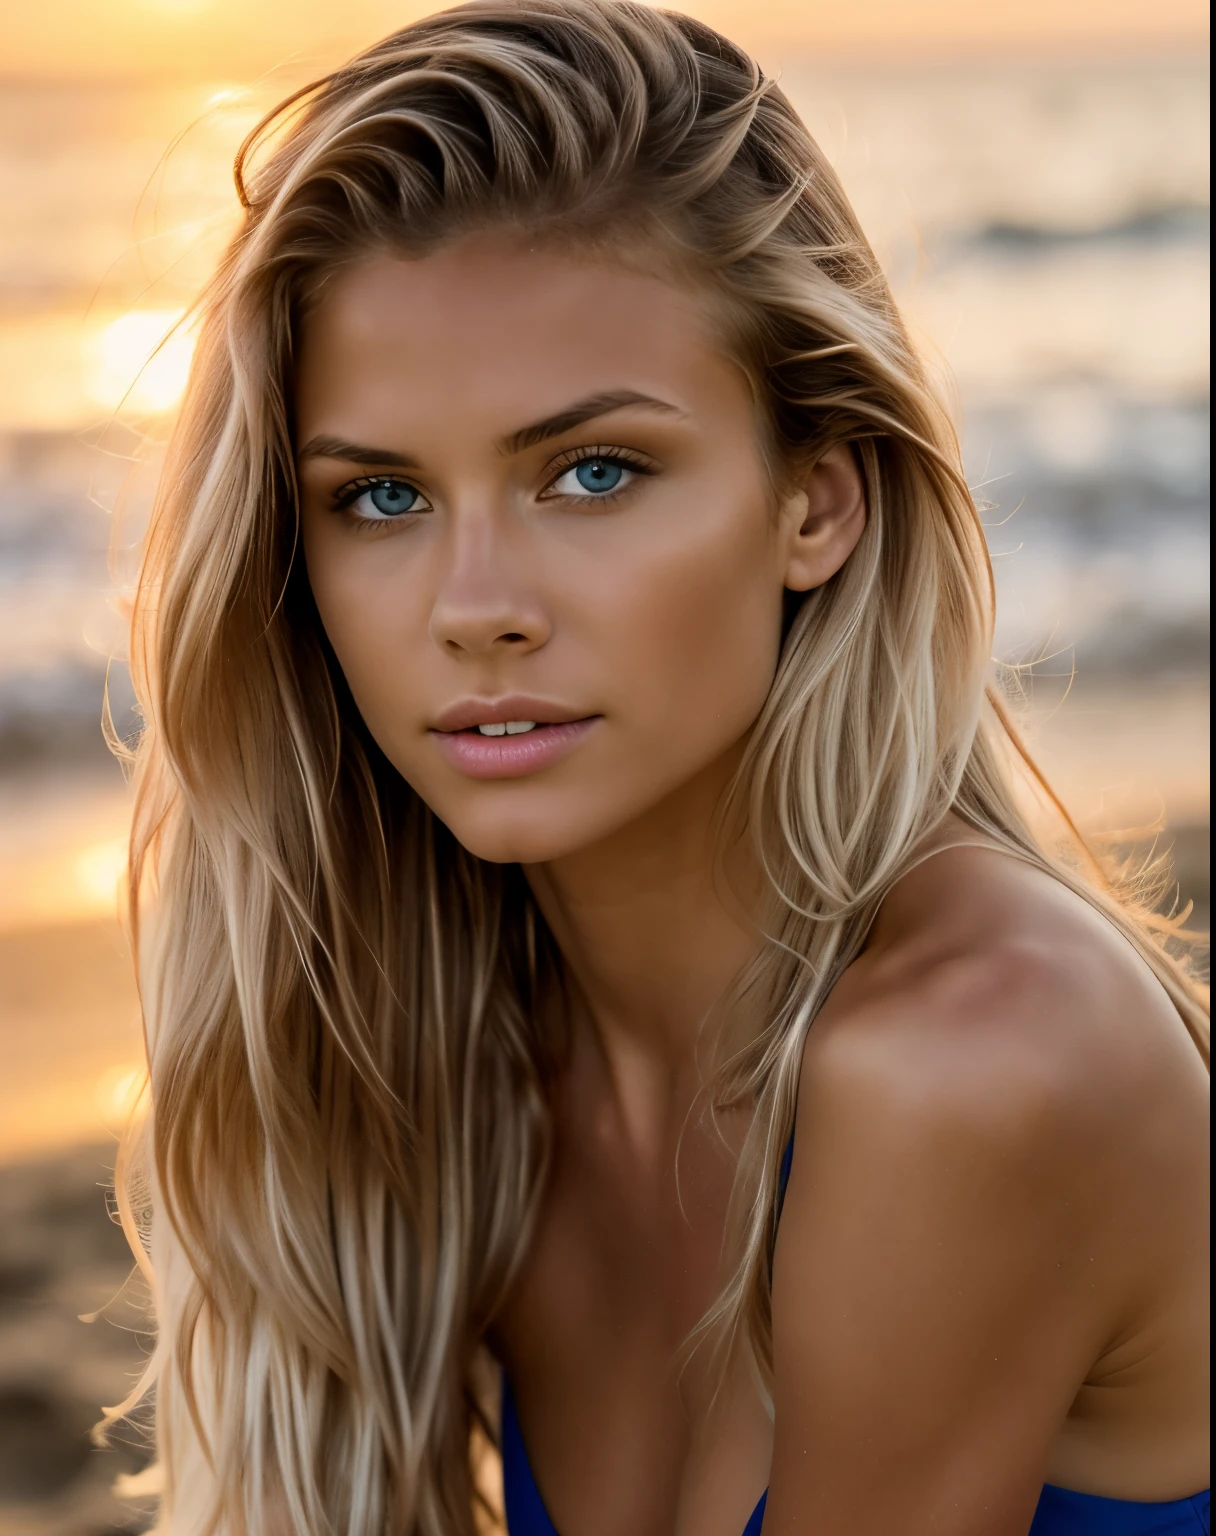 ensaio fotográfico de uma modelo, Luz natural, profissional, (Foto 4k:1.1) (foco nitído:1.3), Alto detalhe, lindo rosto detalhado, olhos cor de avelã, Cabelo loiro comprido, (mulher jovem e atraente:1.3), (sedutor:1.1), (rubor:1.1), Formato do corpo em ampulheta, Uma garota, Em azul, (sentado na praia assistindo o pôr do sol),(corpo todo).